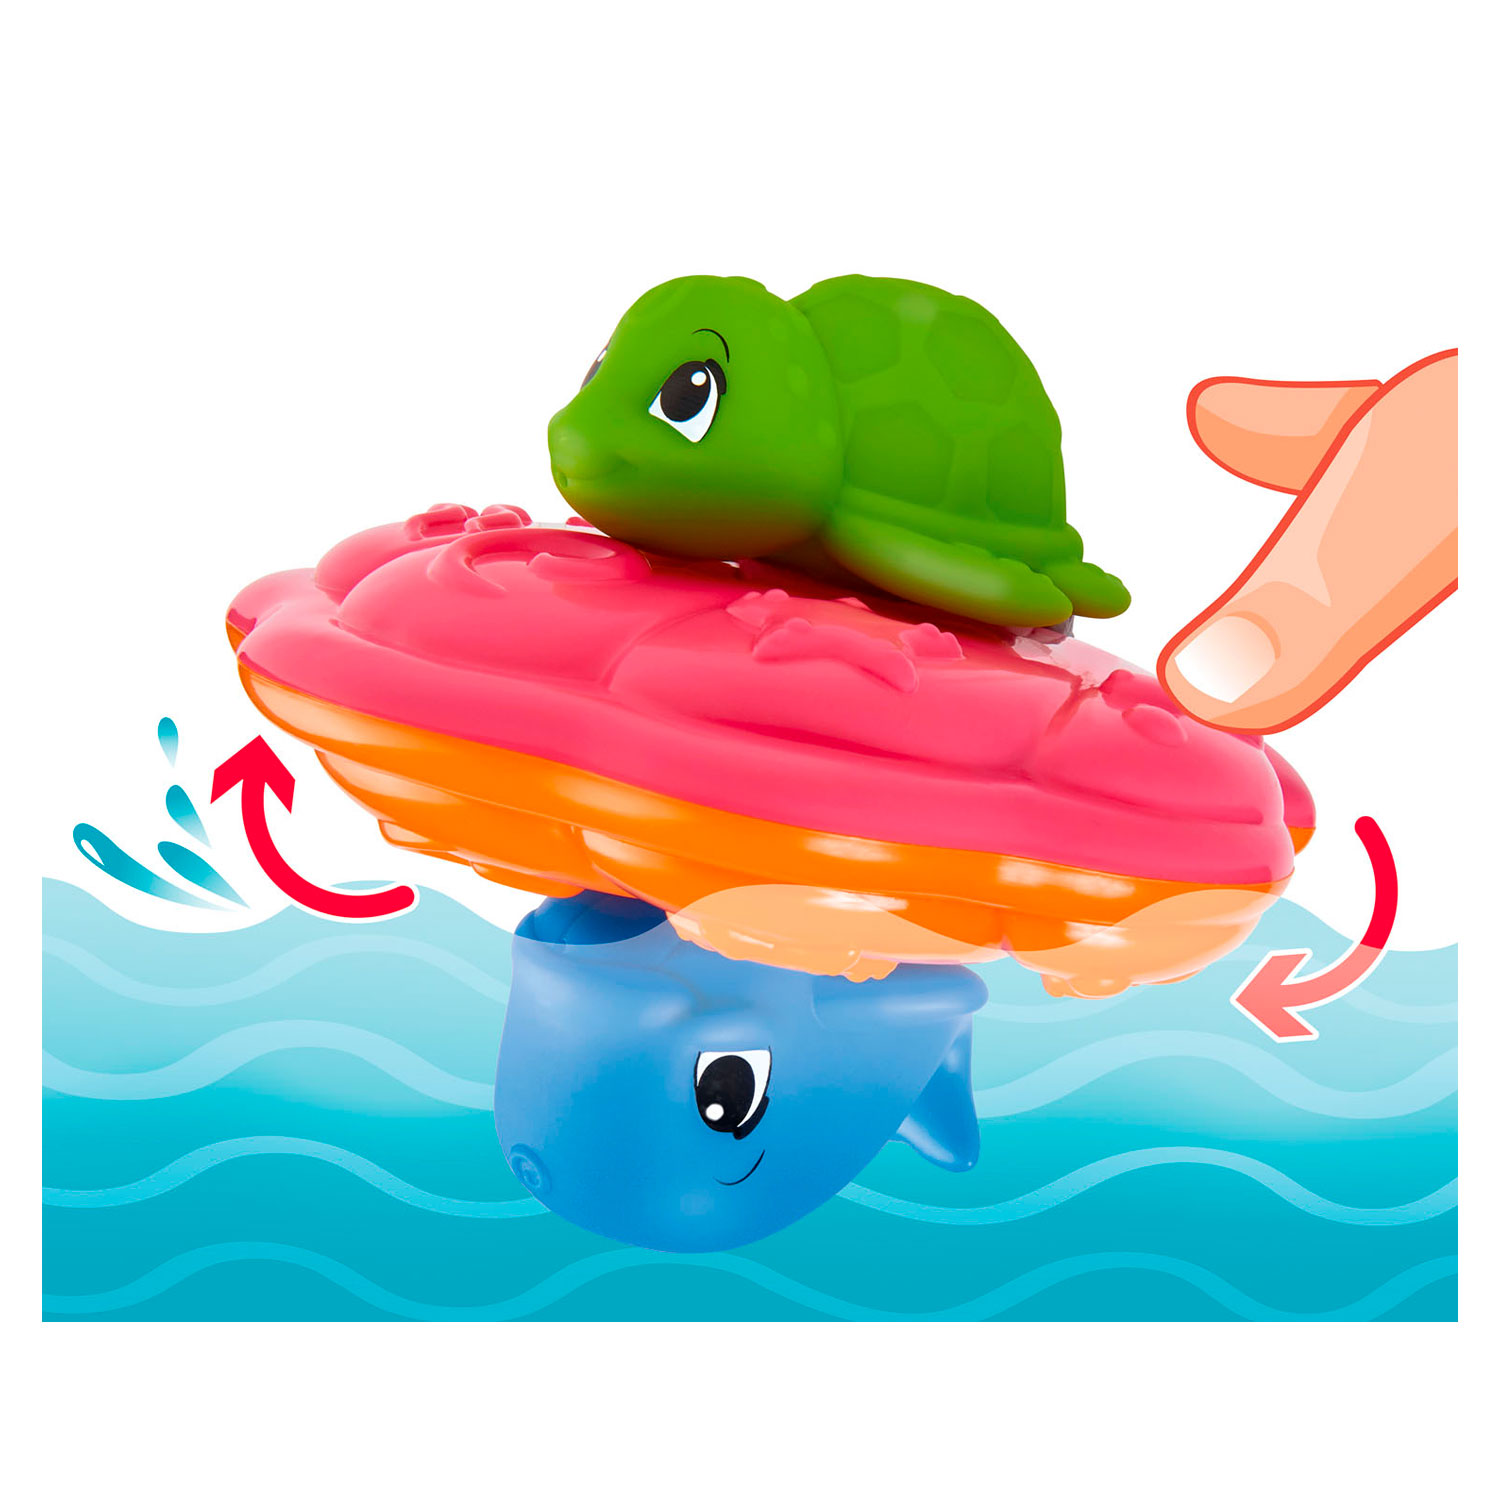 Coquille de jouet de bain ABC avec animaux marins